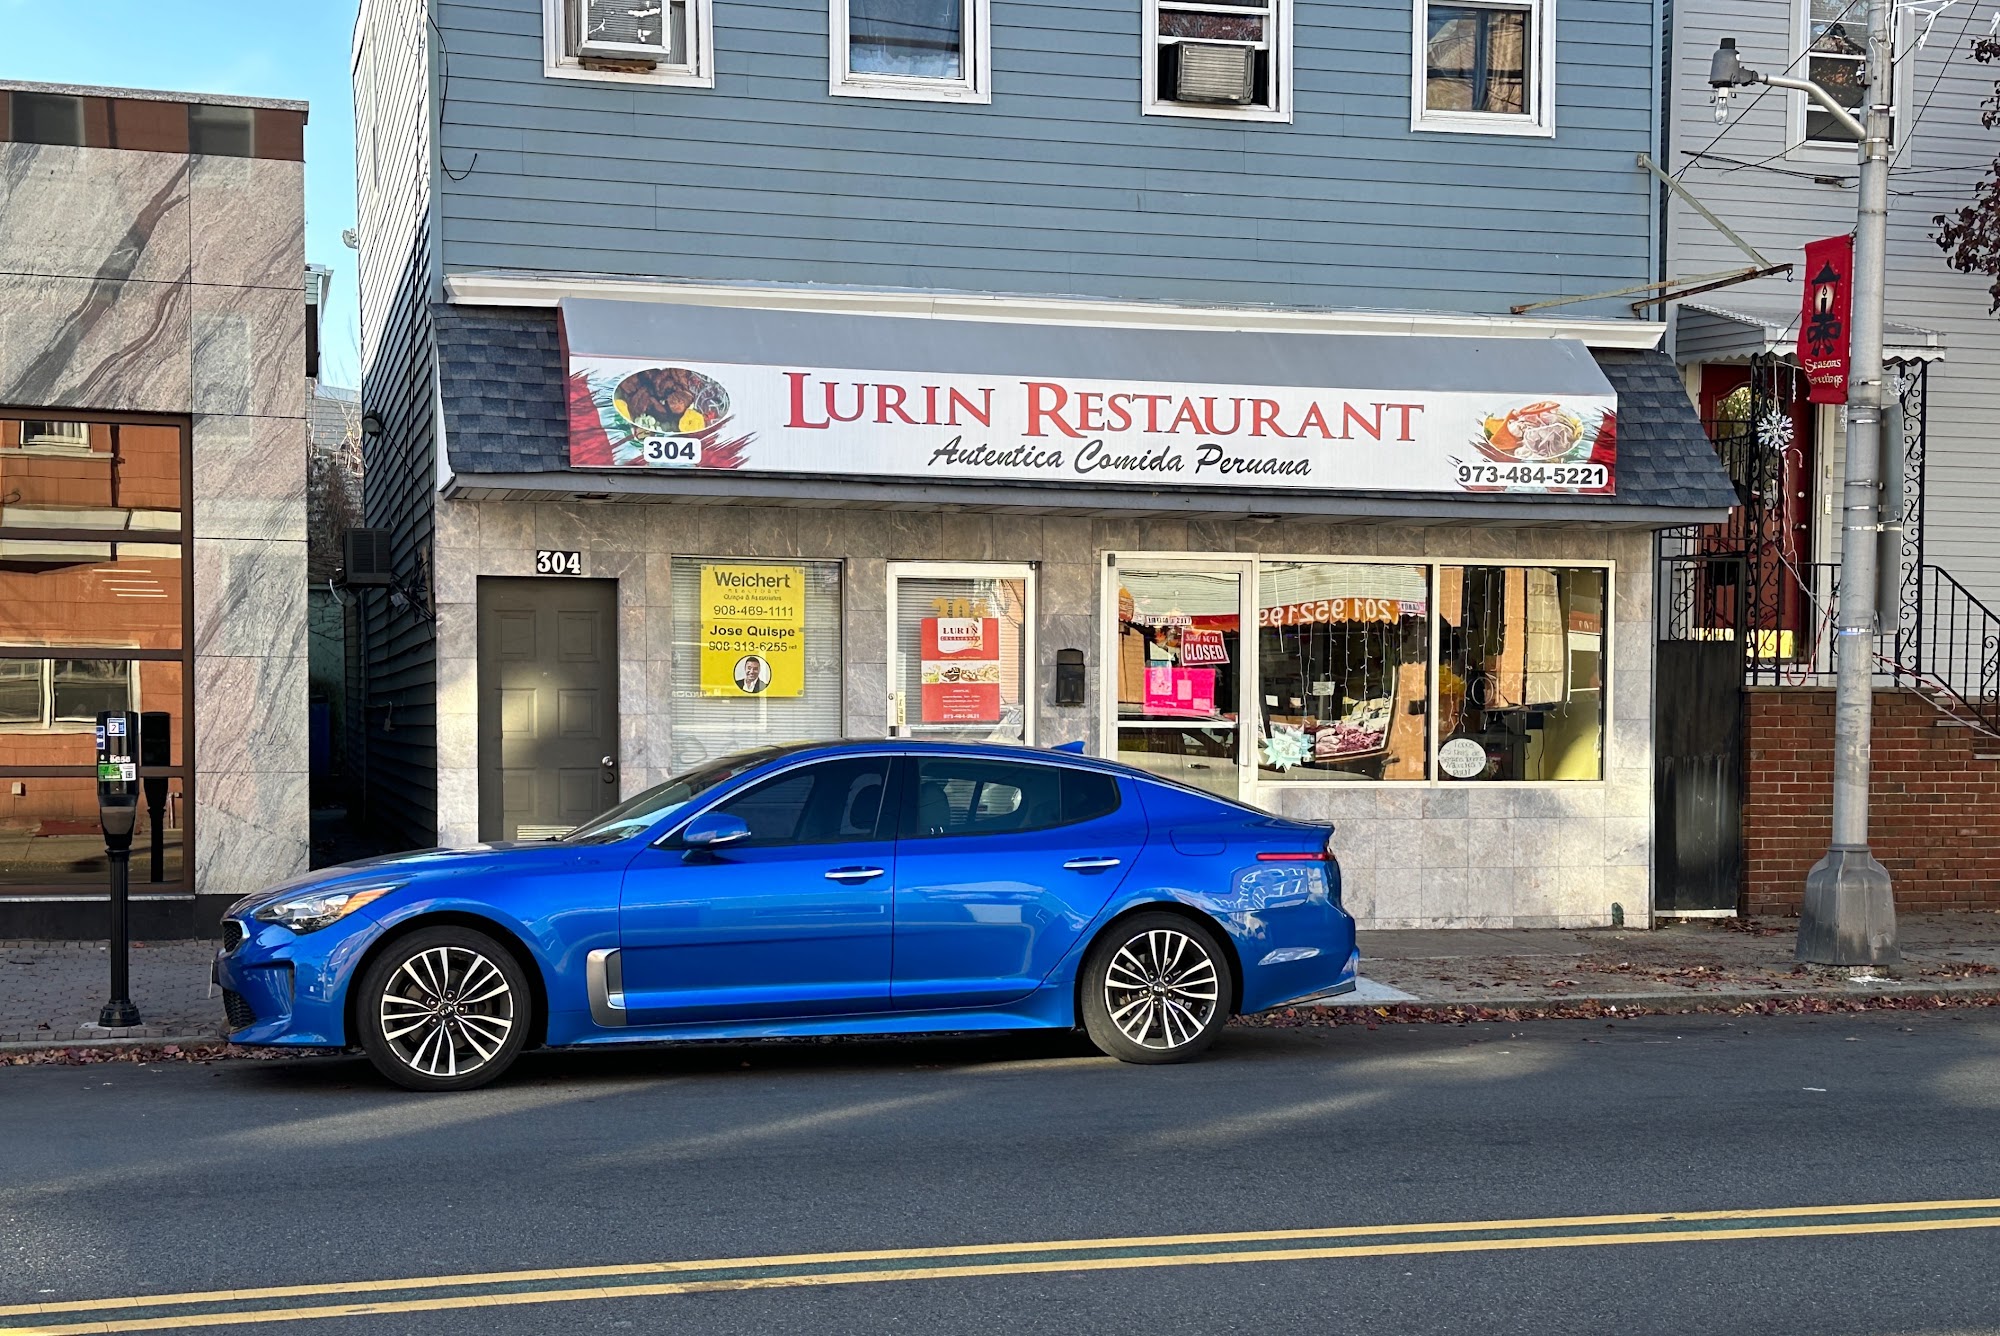 Lurin Restaurant